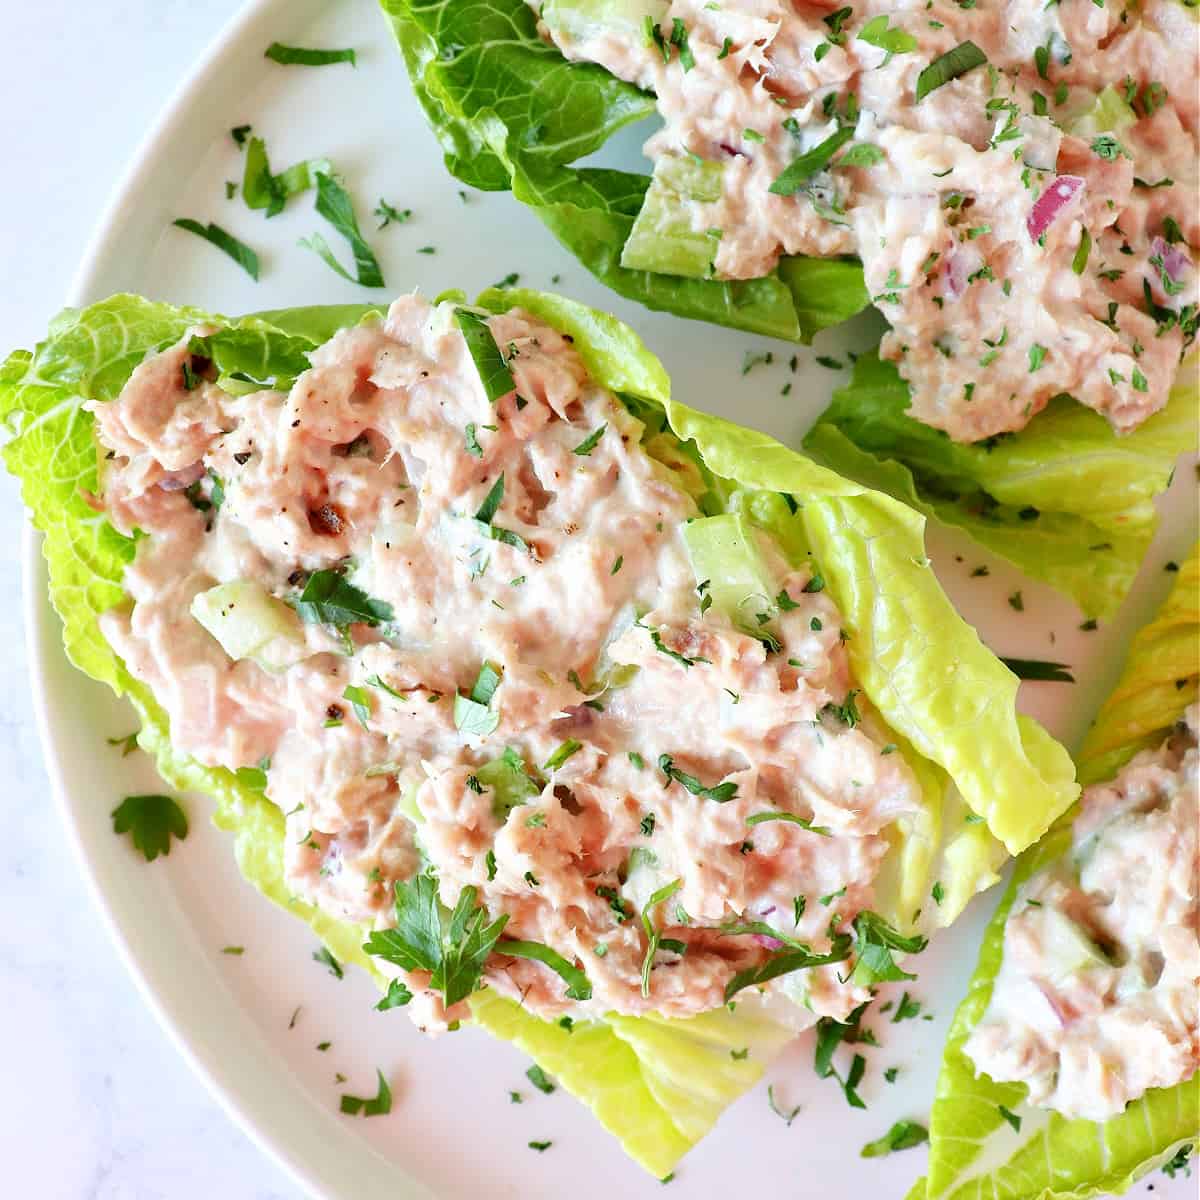 Tuna salad on lettuce on a plate.